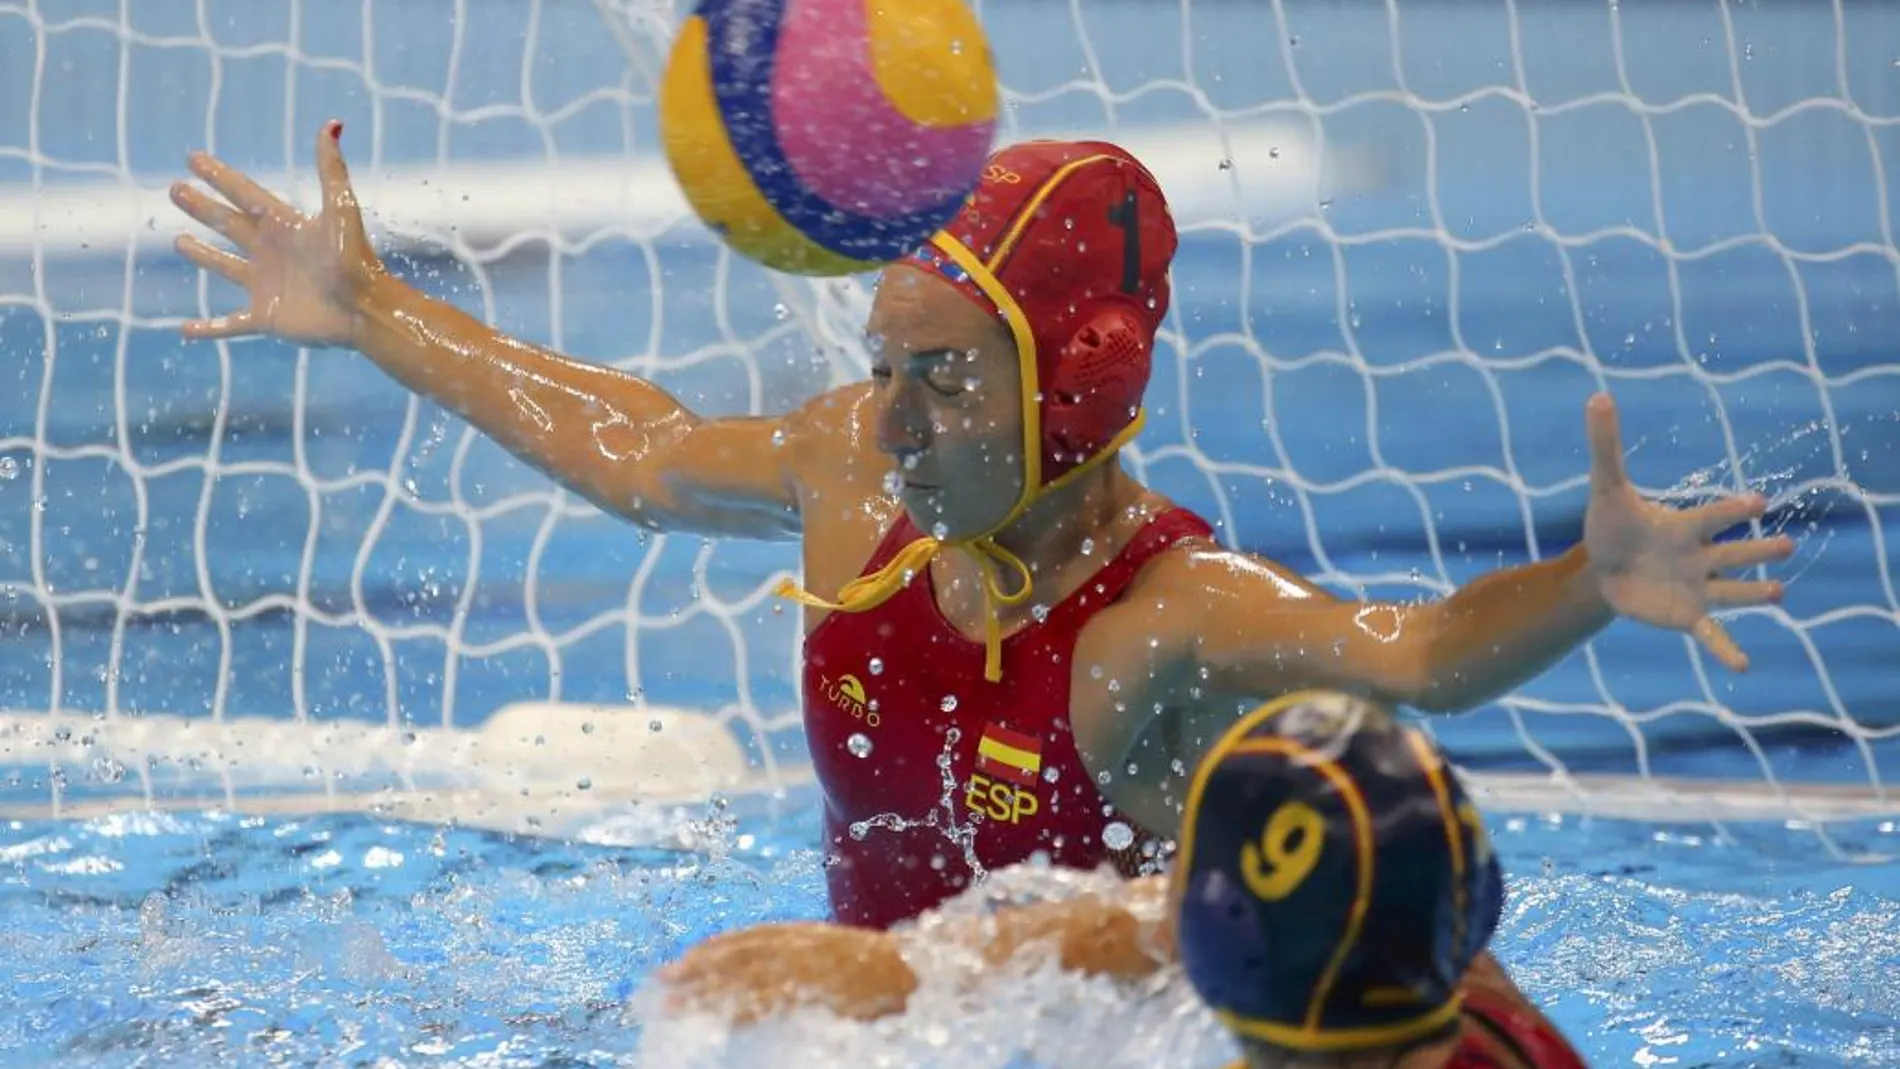 Laura Ester, portera de la selección española de waterpolo, detiene un balón